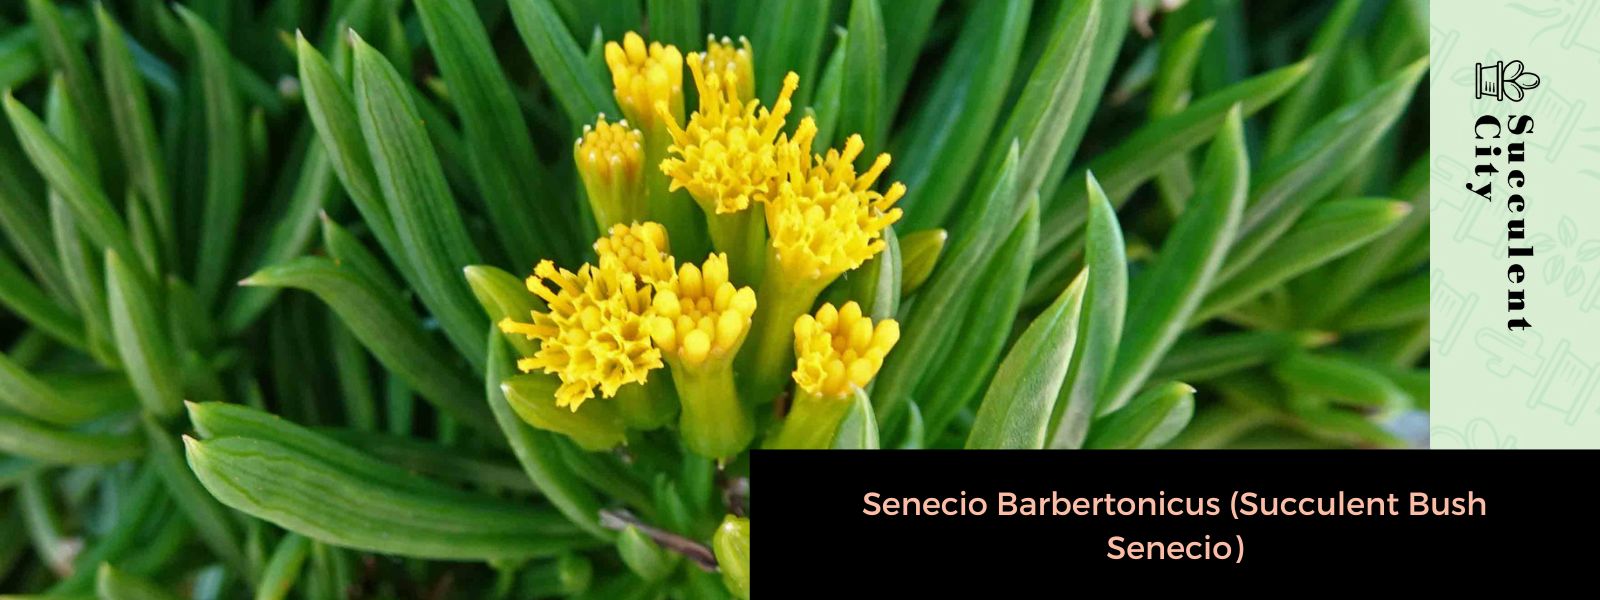 Senecio Barbertonicus (Arbusto Suculento Senecio)